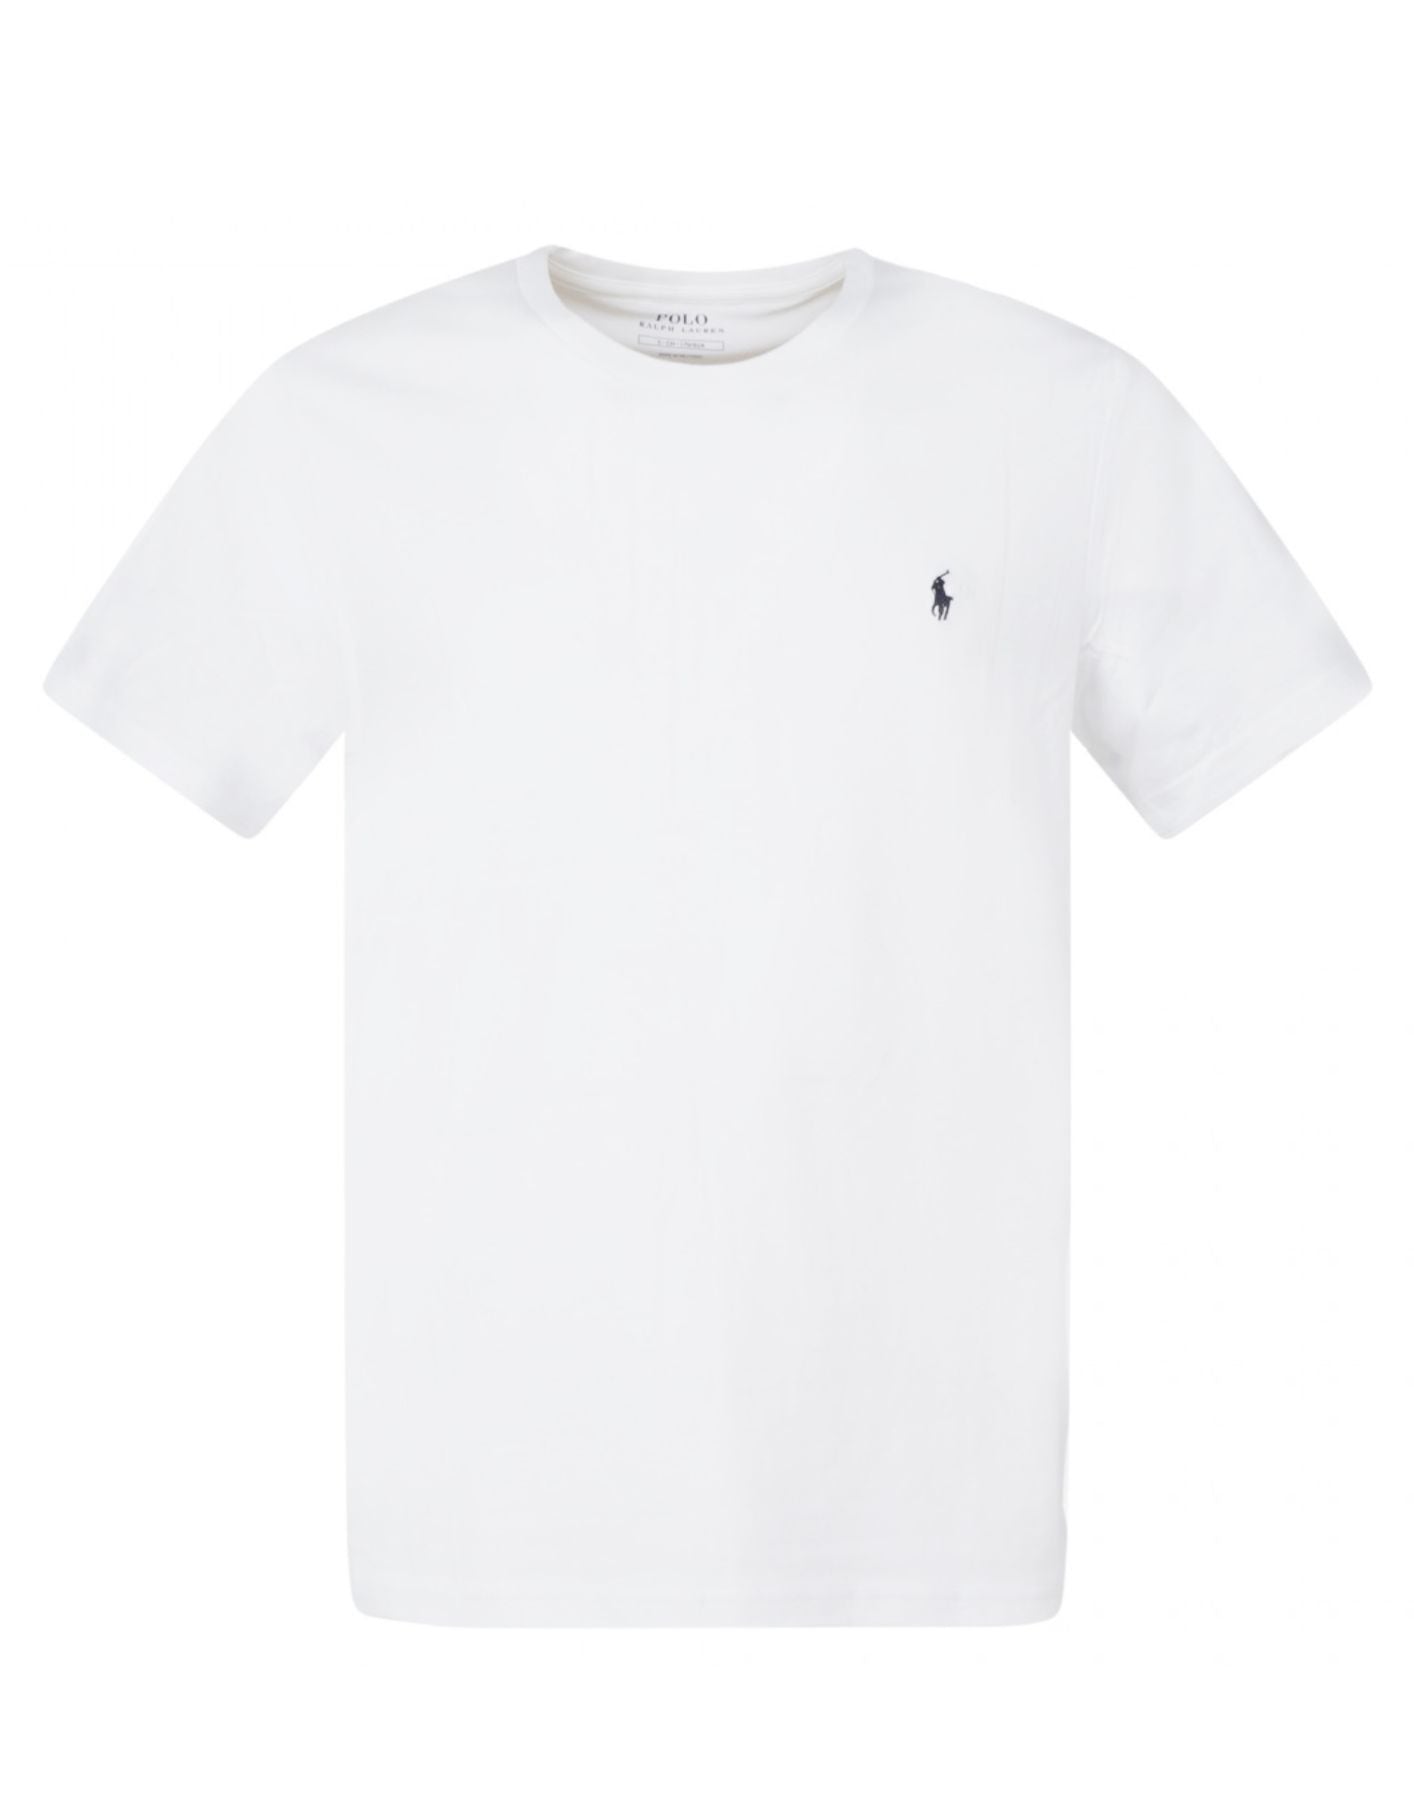 T-Shirt für Mann 714844756004 Weiß Polo Ralph Lauren